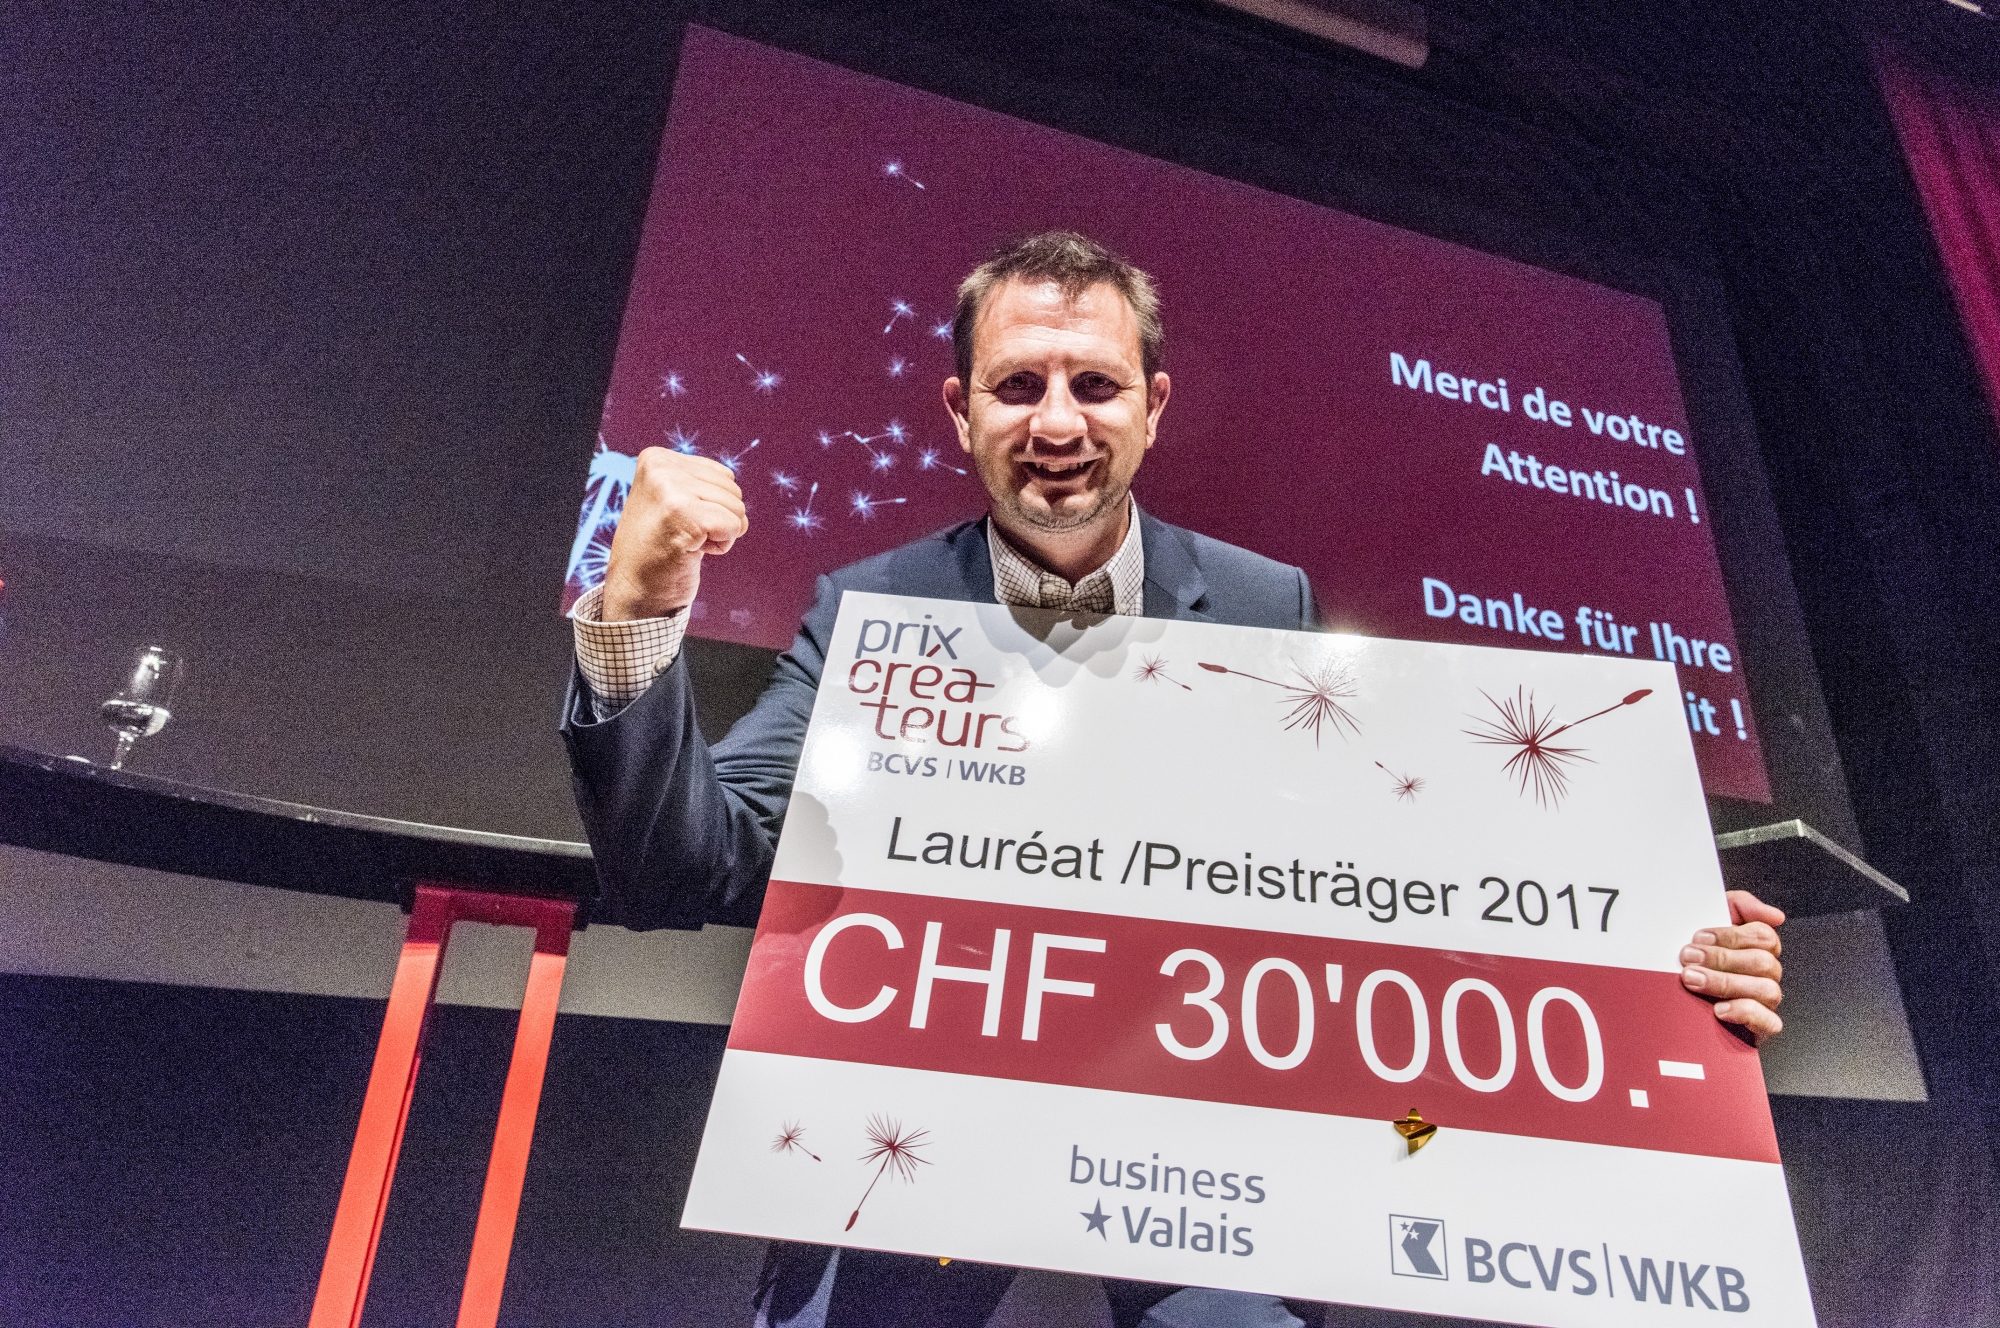 Qui succédera à la start-up Agrofly qui a remporté le Prix Créateurs 2017?